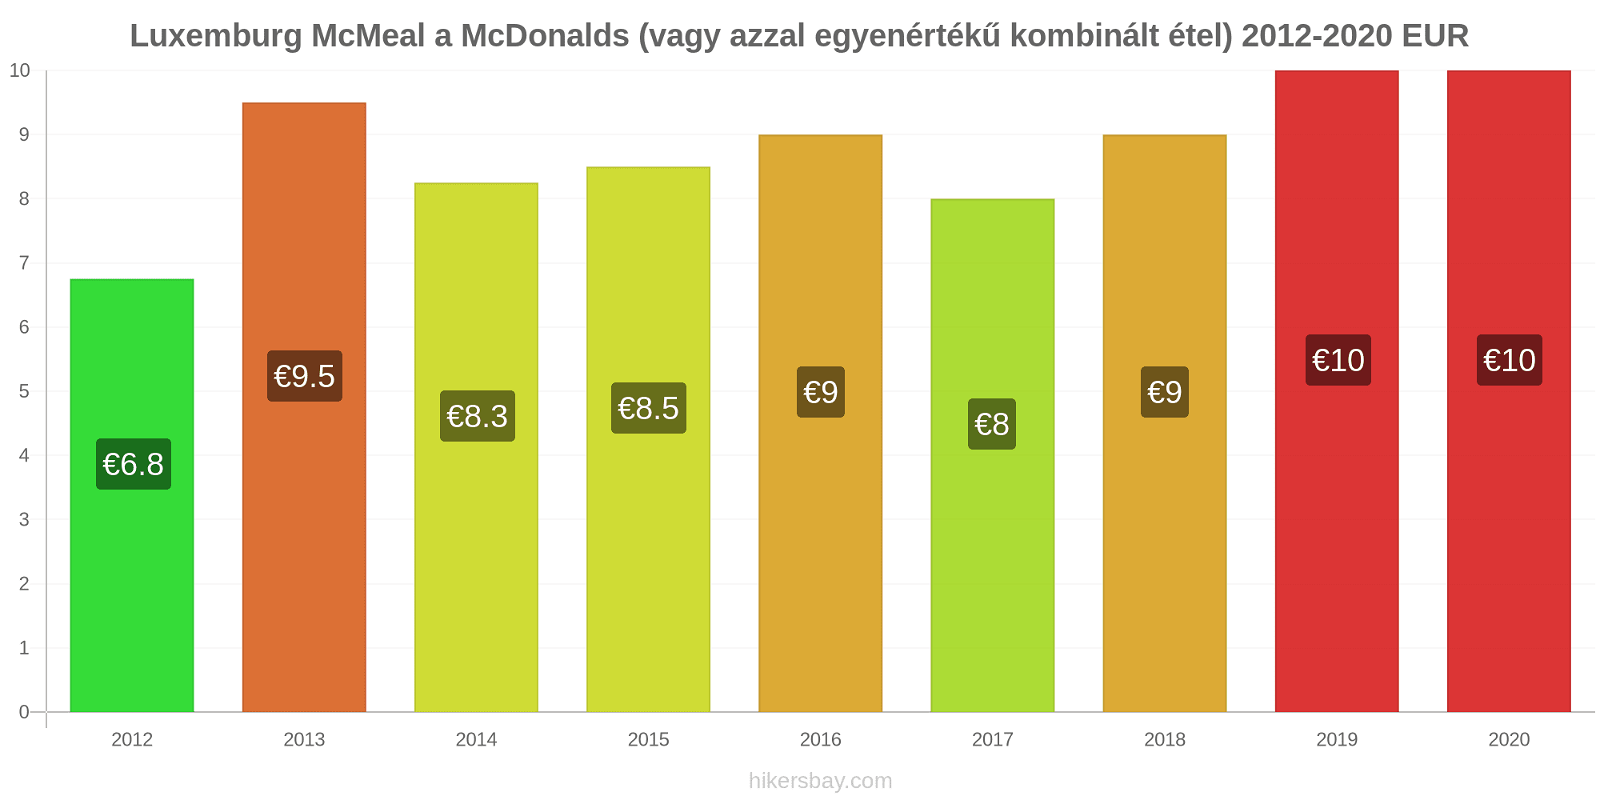 Luxemburg árváltozások McMeal a McDonalds (vagy azzal egyenértékű kombinált étel) hikersbay.com